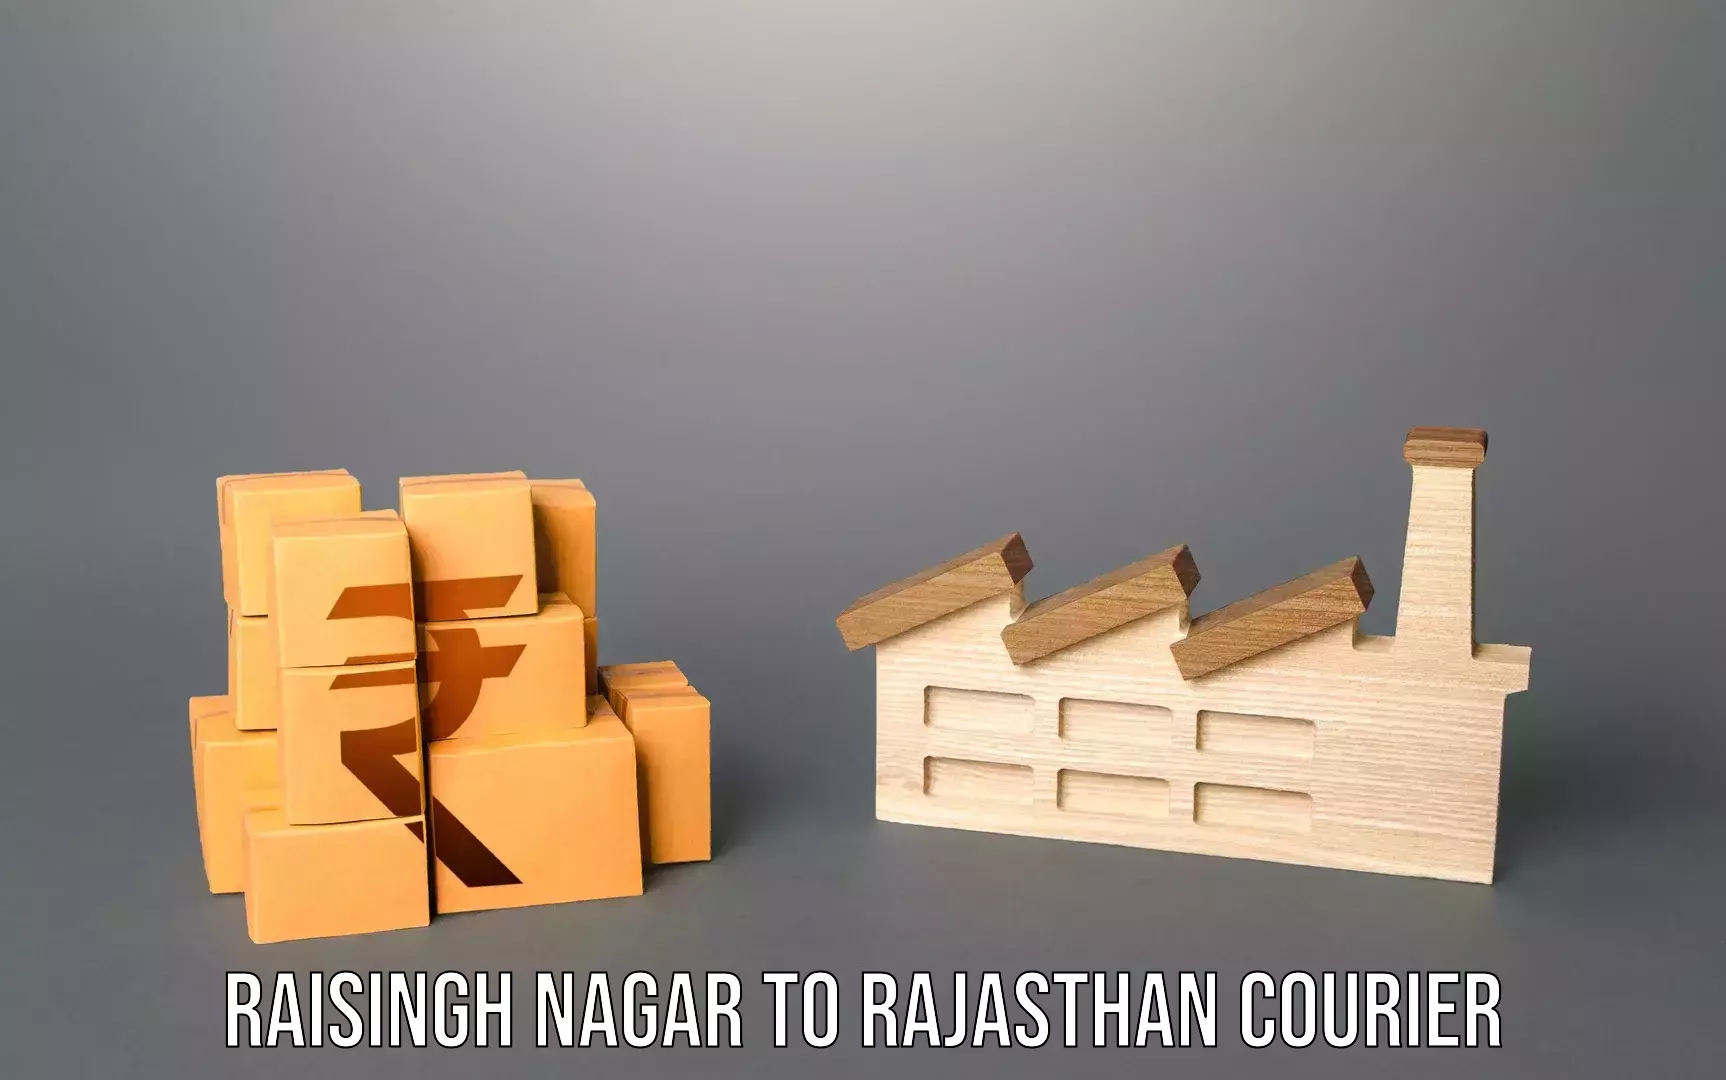 Baggage transport management Raisingh Nagar to Nainwa